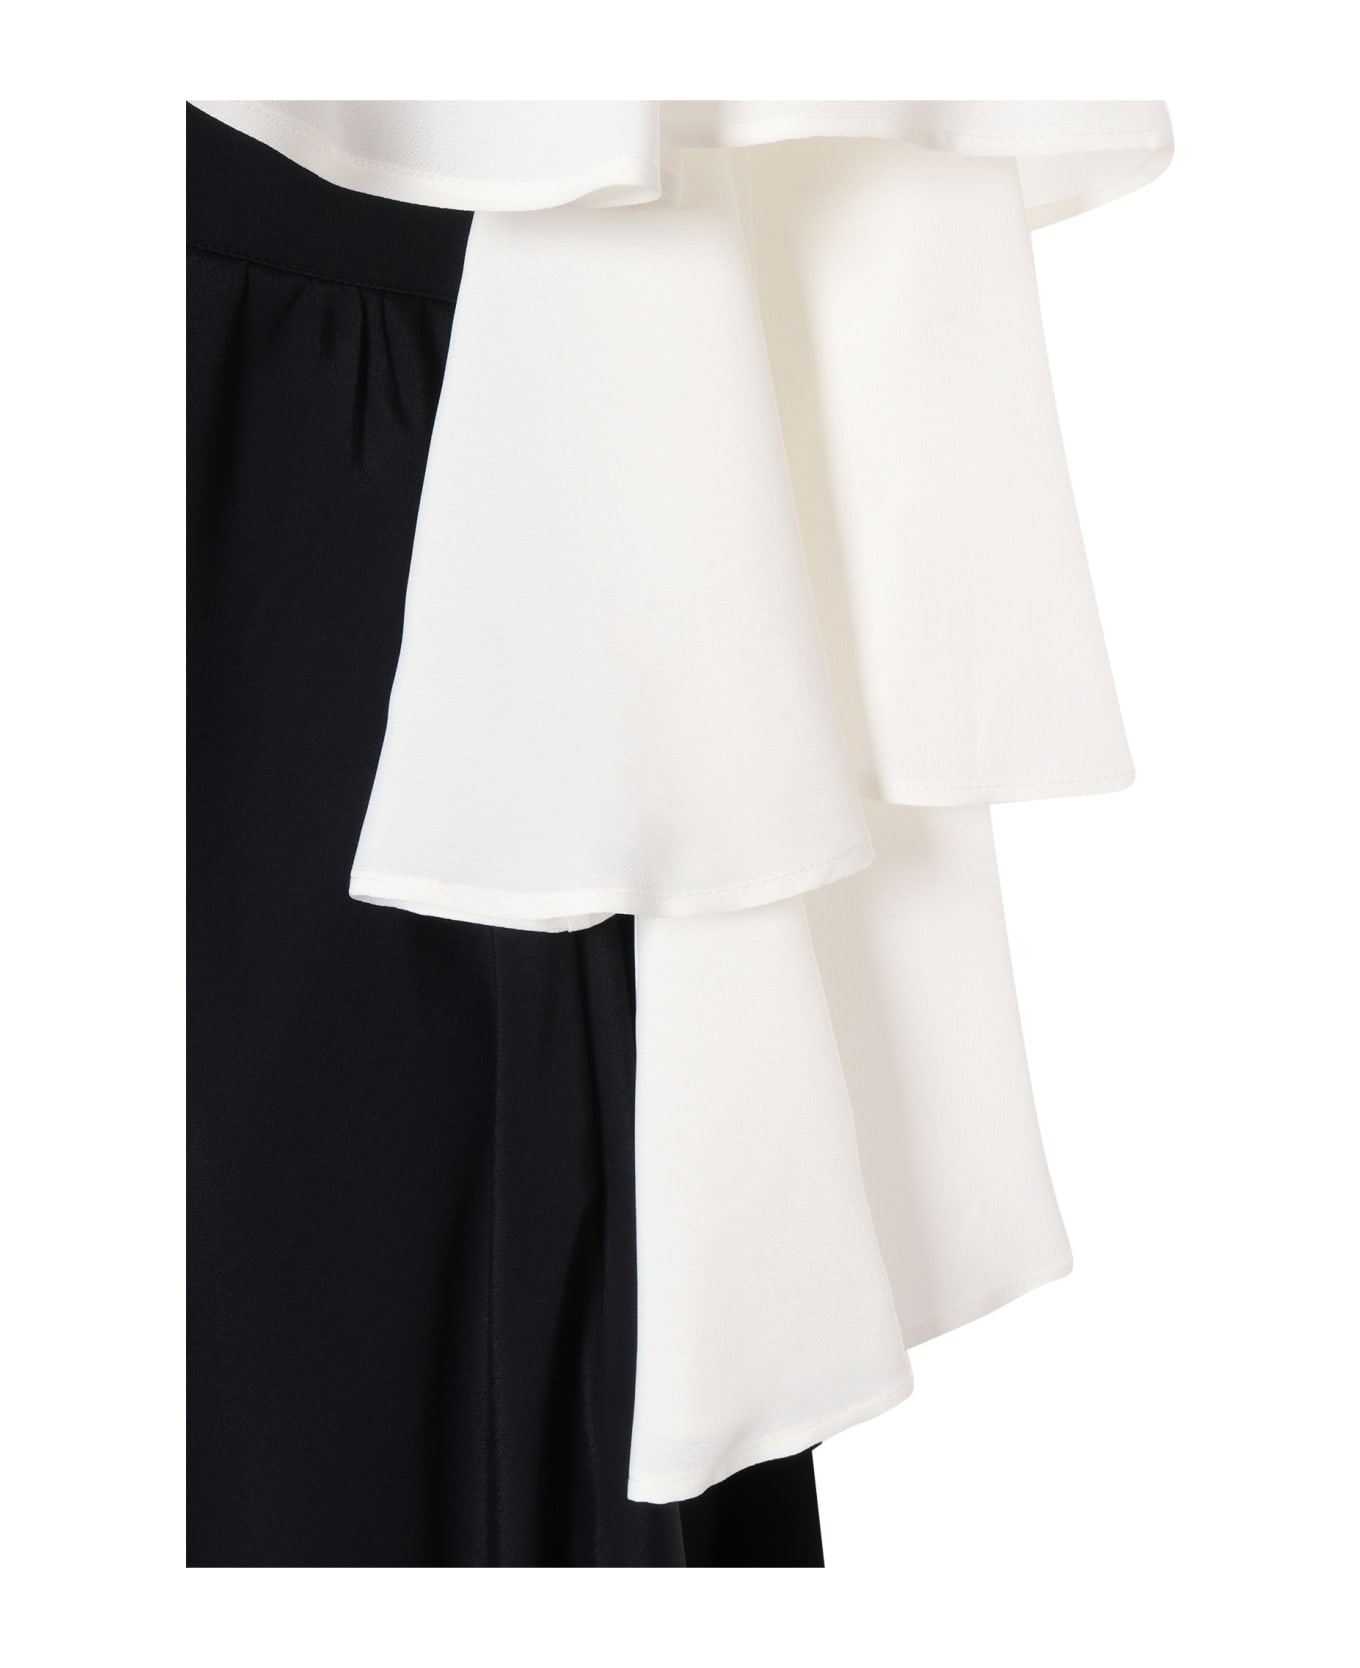 Balmain Two-tone Balmain Dress - WHITE